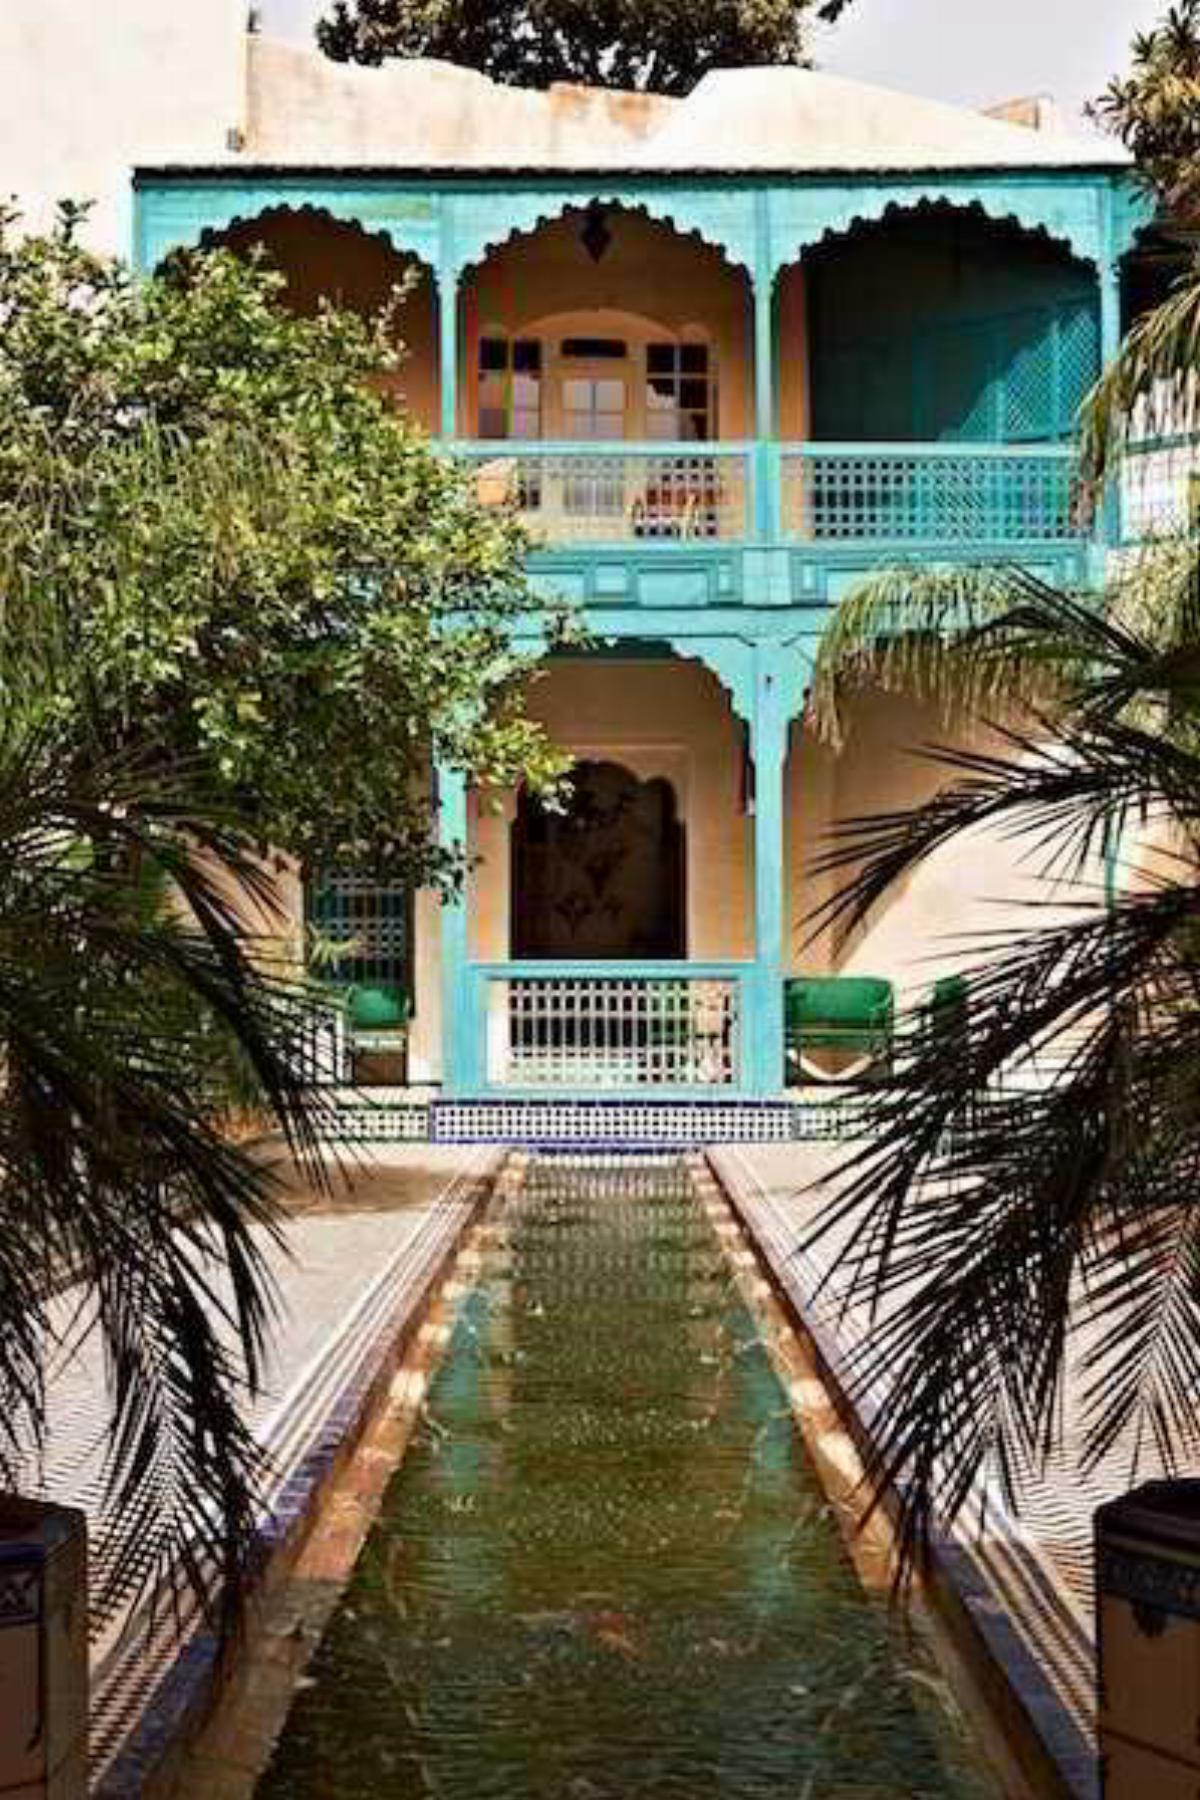 Le Jardin Des Biehn Hotel Fez Morocco